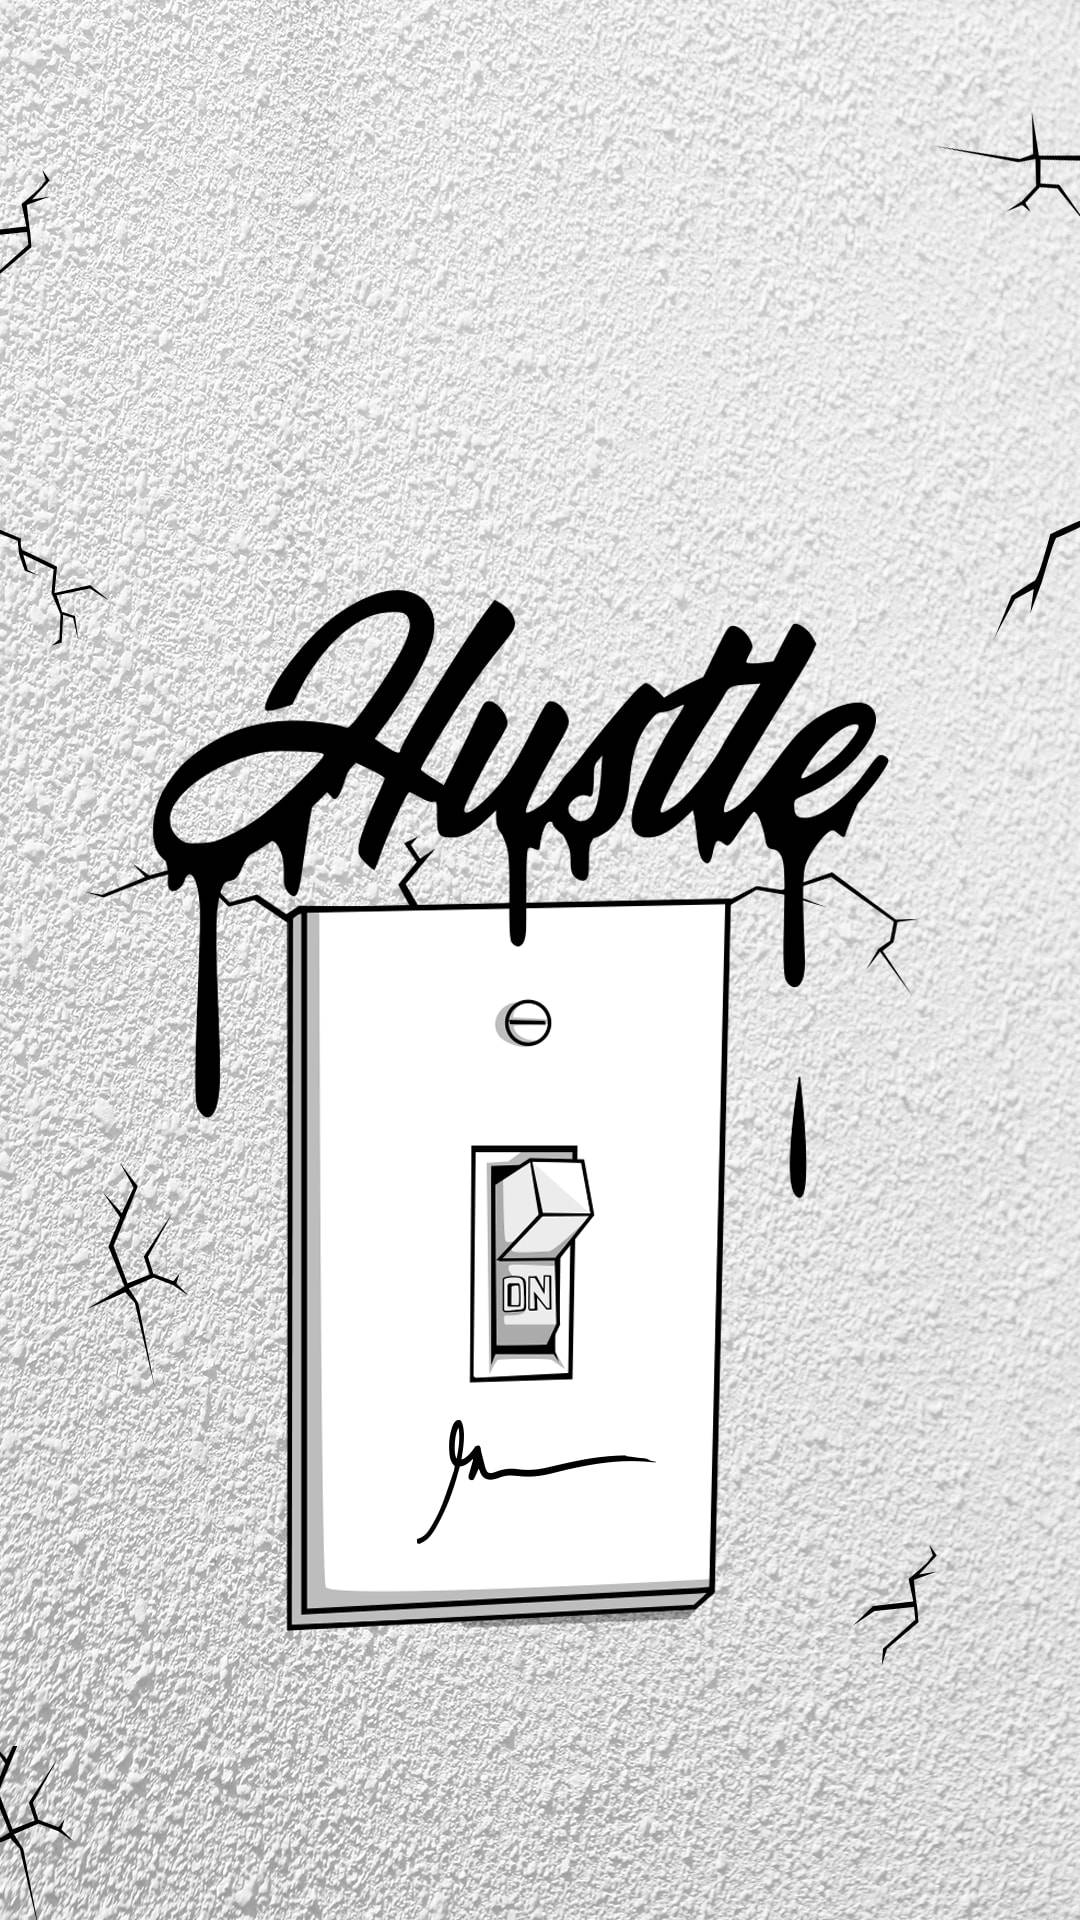 En wall sticker med ordet hustle på det. Wallpaper